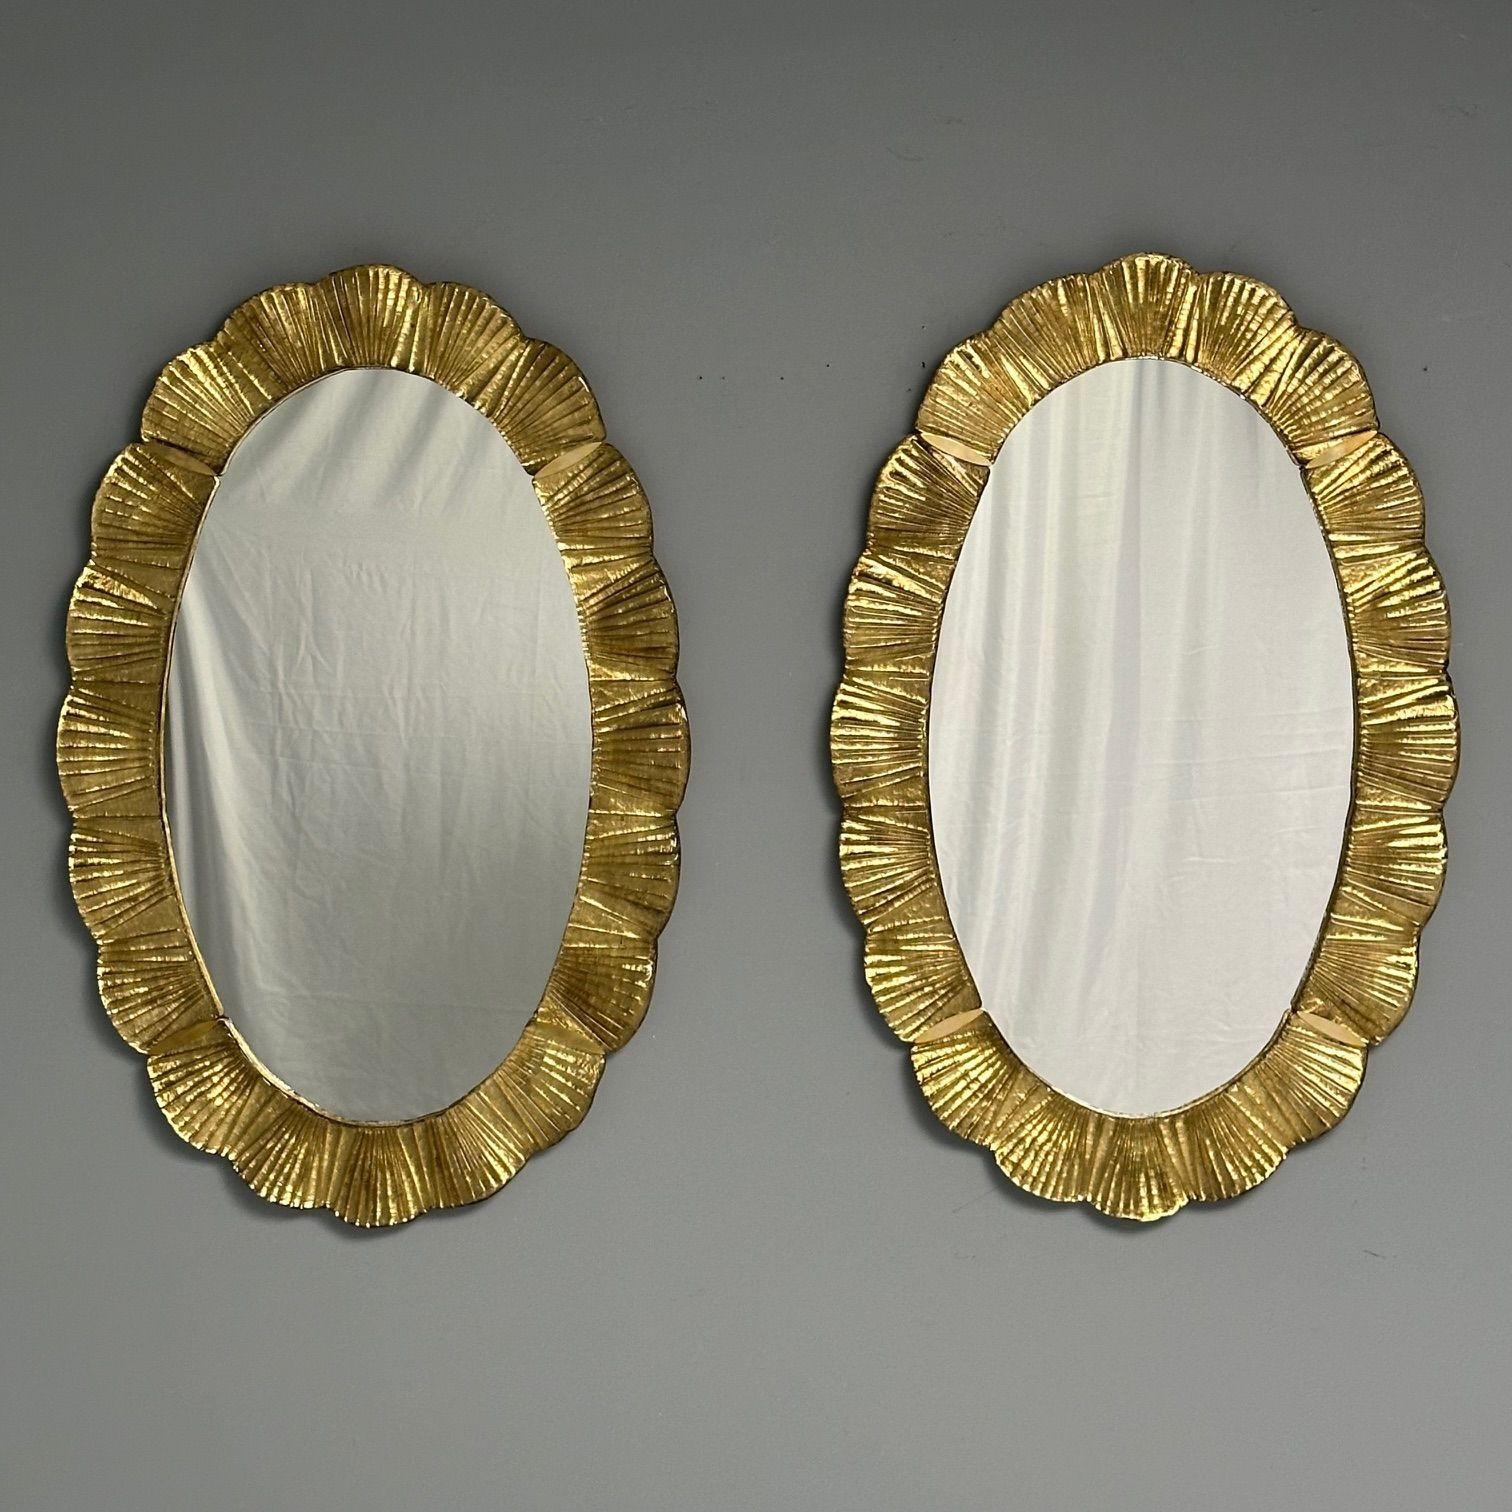 Miroirs muraux contemporains ovales avec motif de festons, verre de Murano, or doré, Italie, 2023.

Paire de miroirs muraux rectangulaires conçus et fabriqués à la main dans un petit atelier de Venise, en Italie. Chaque miroir est doté d'un cadre en